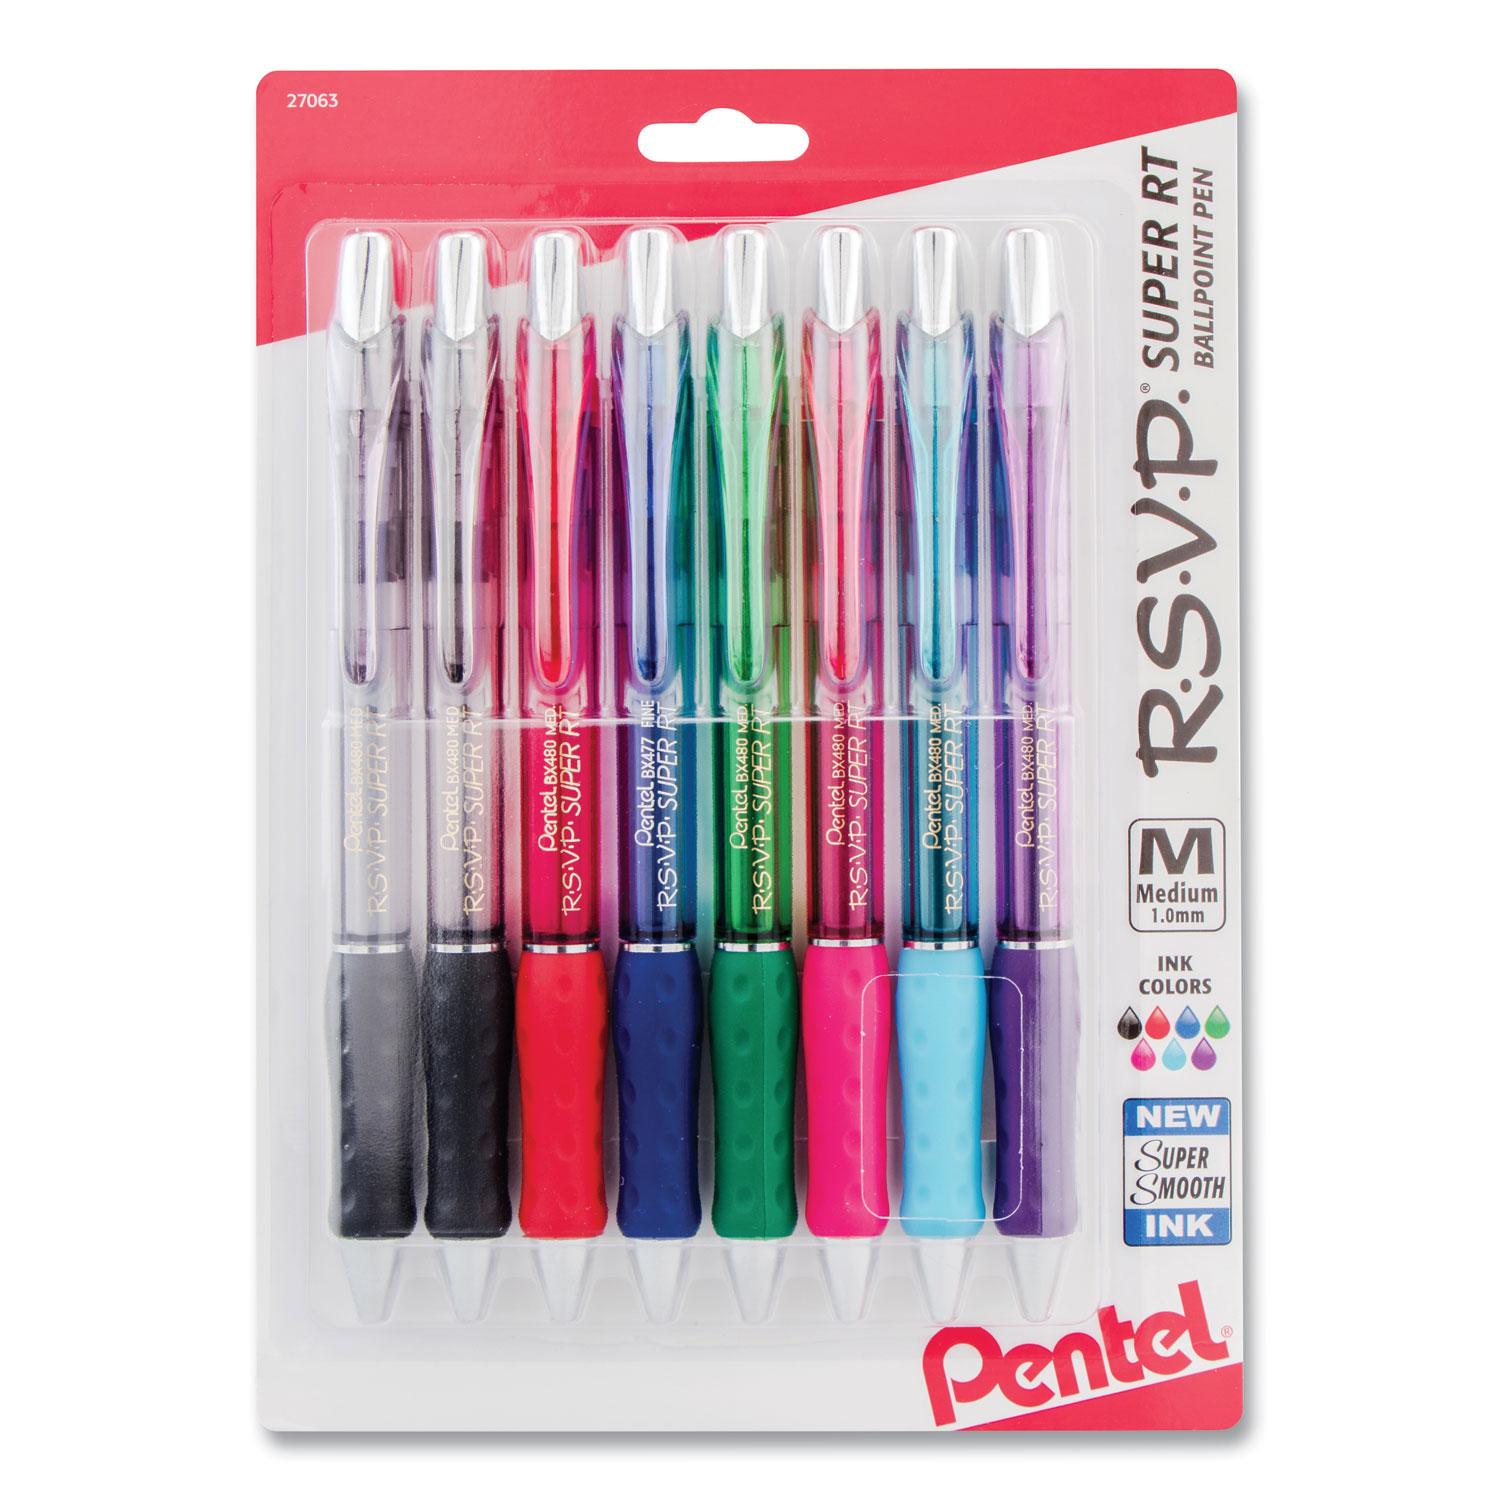 Pentel R.S.V.P Pink Medium Point Ballpoint Pen